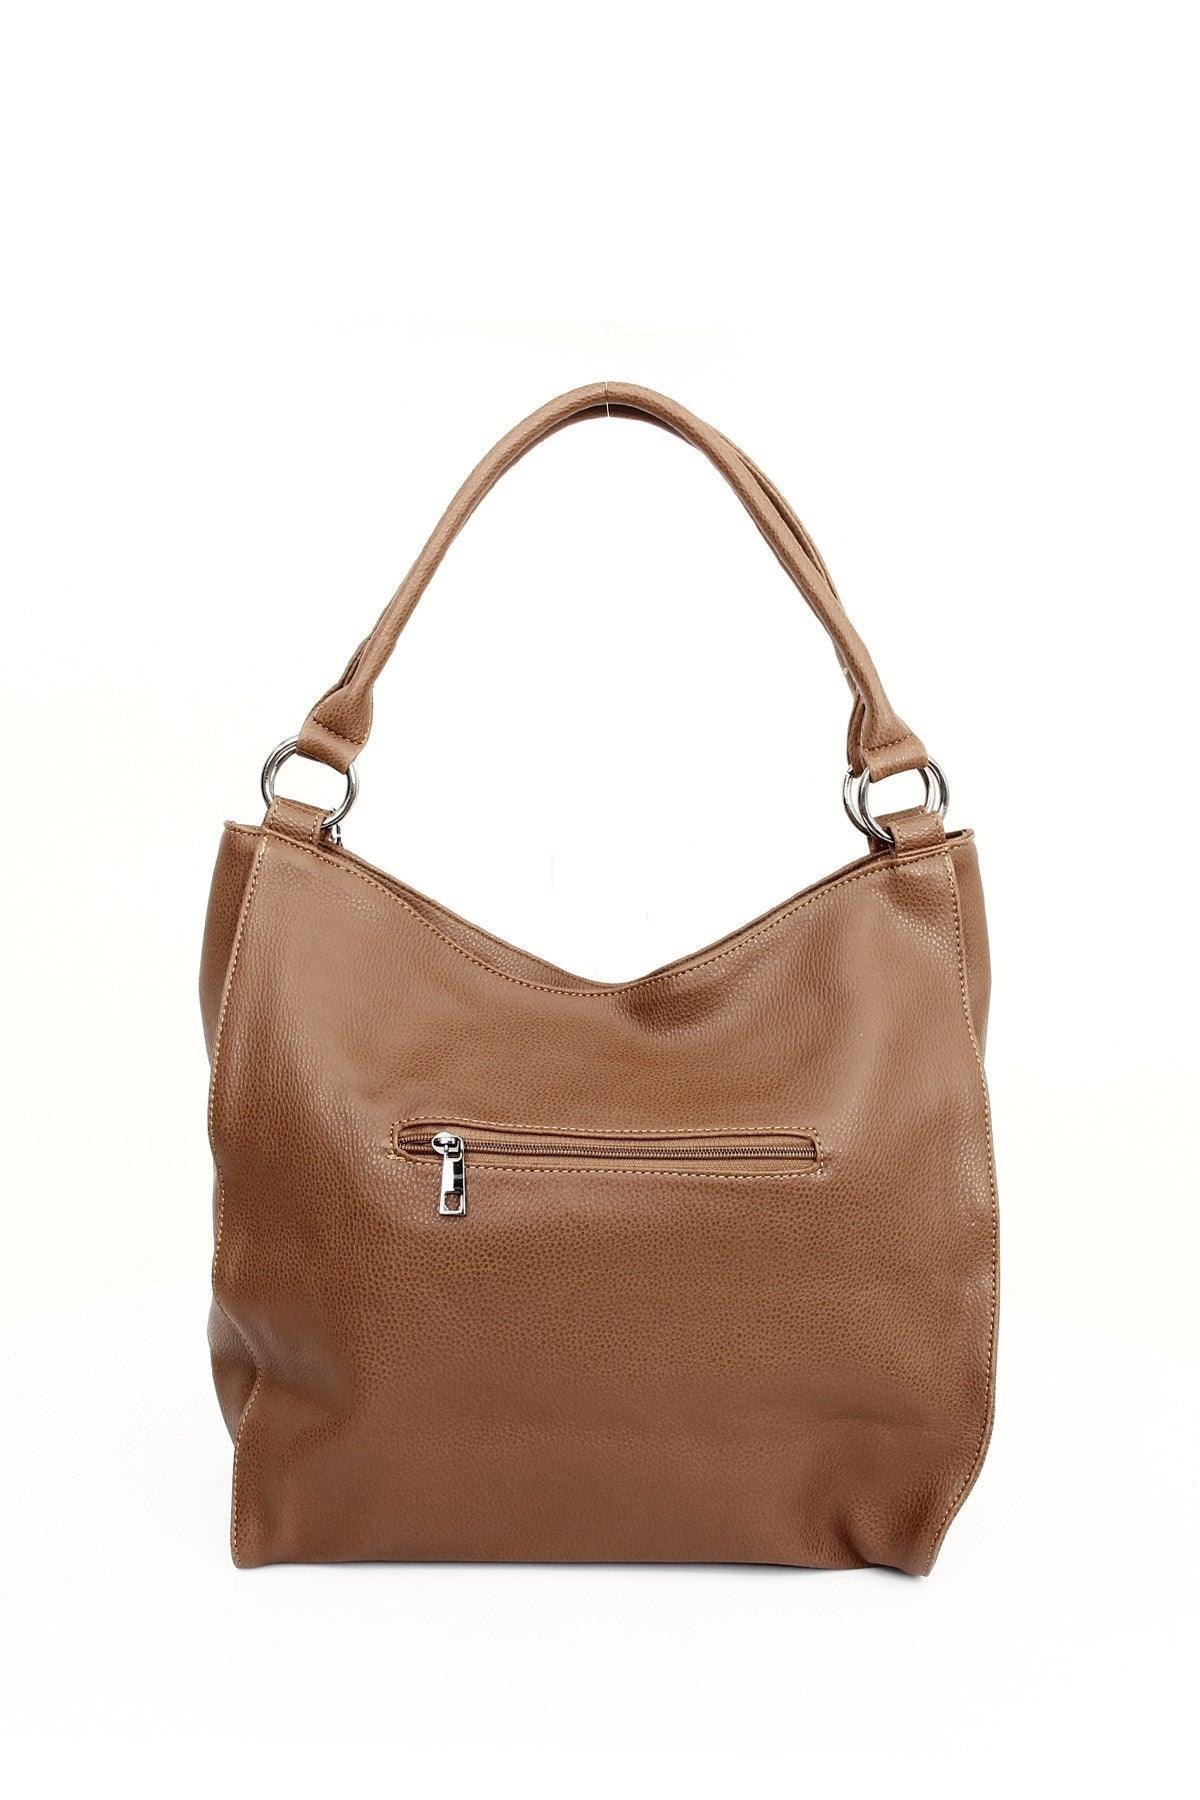 Ginger Brown Leather Shoulder & Handbag